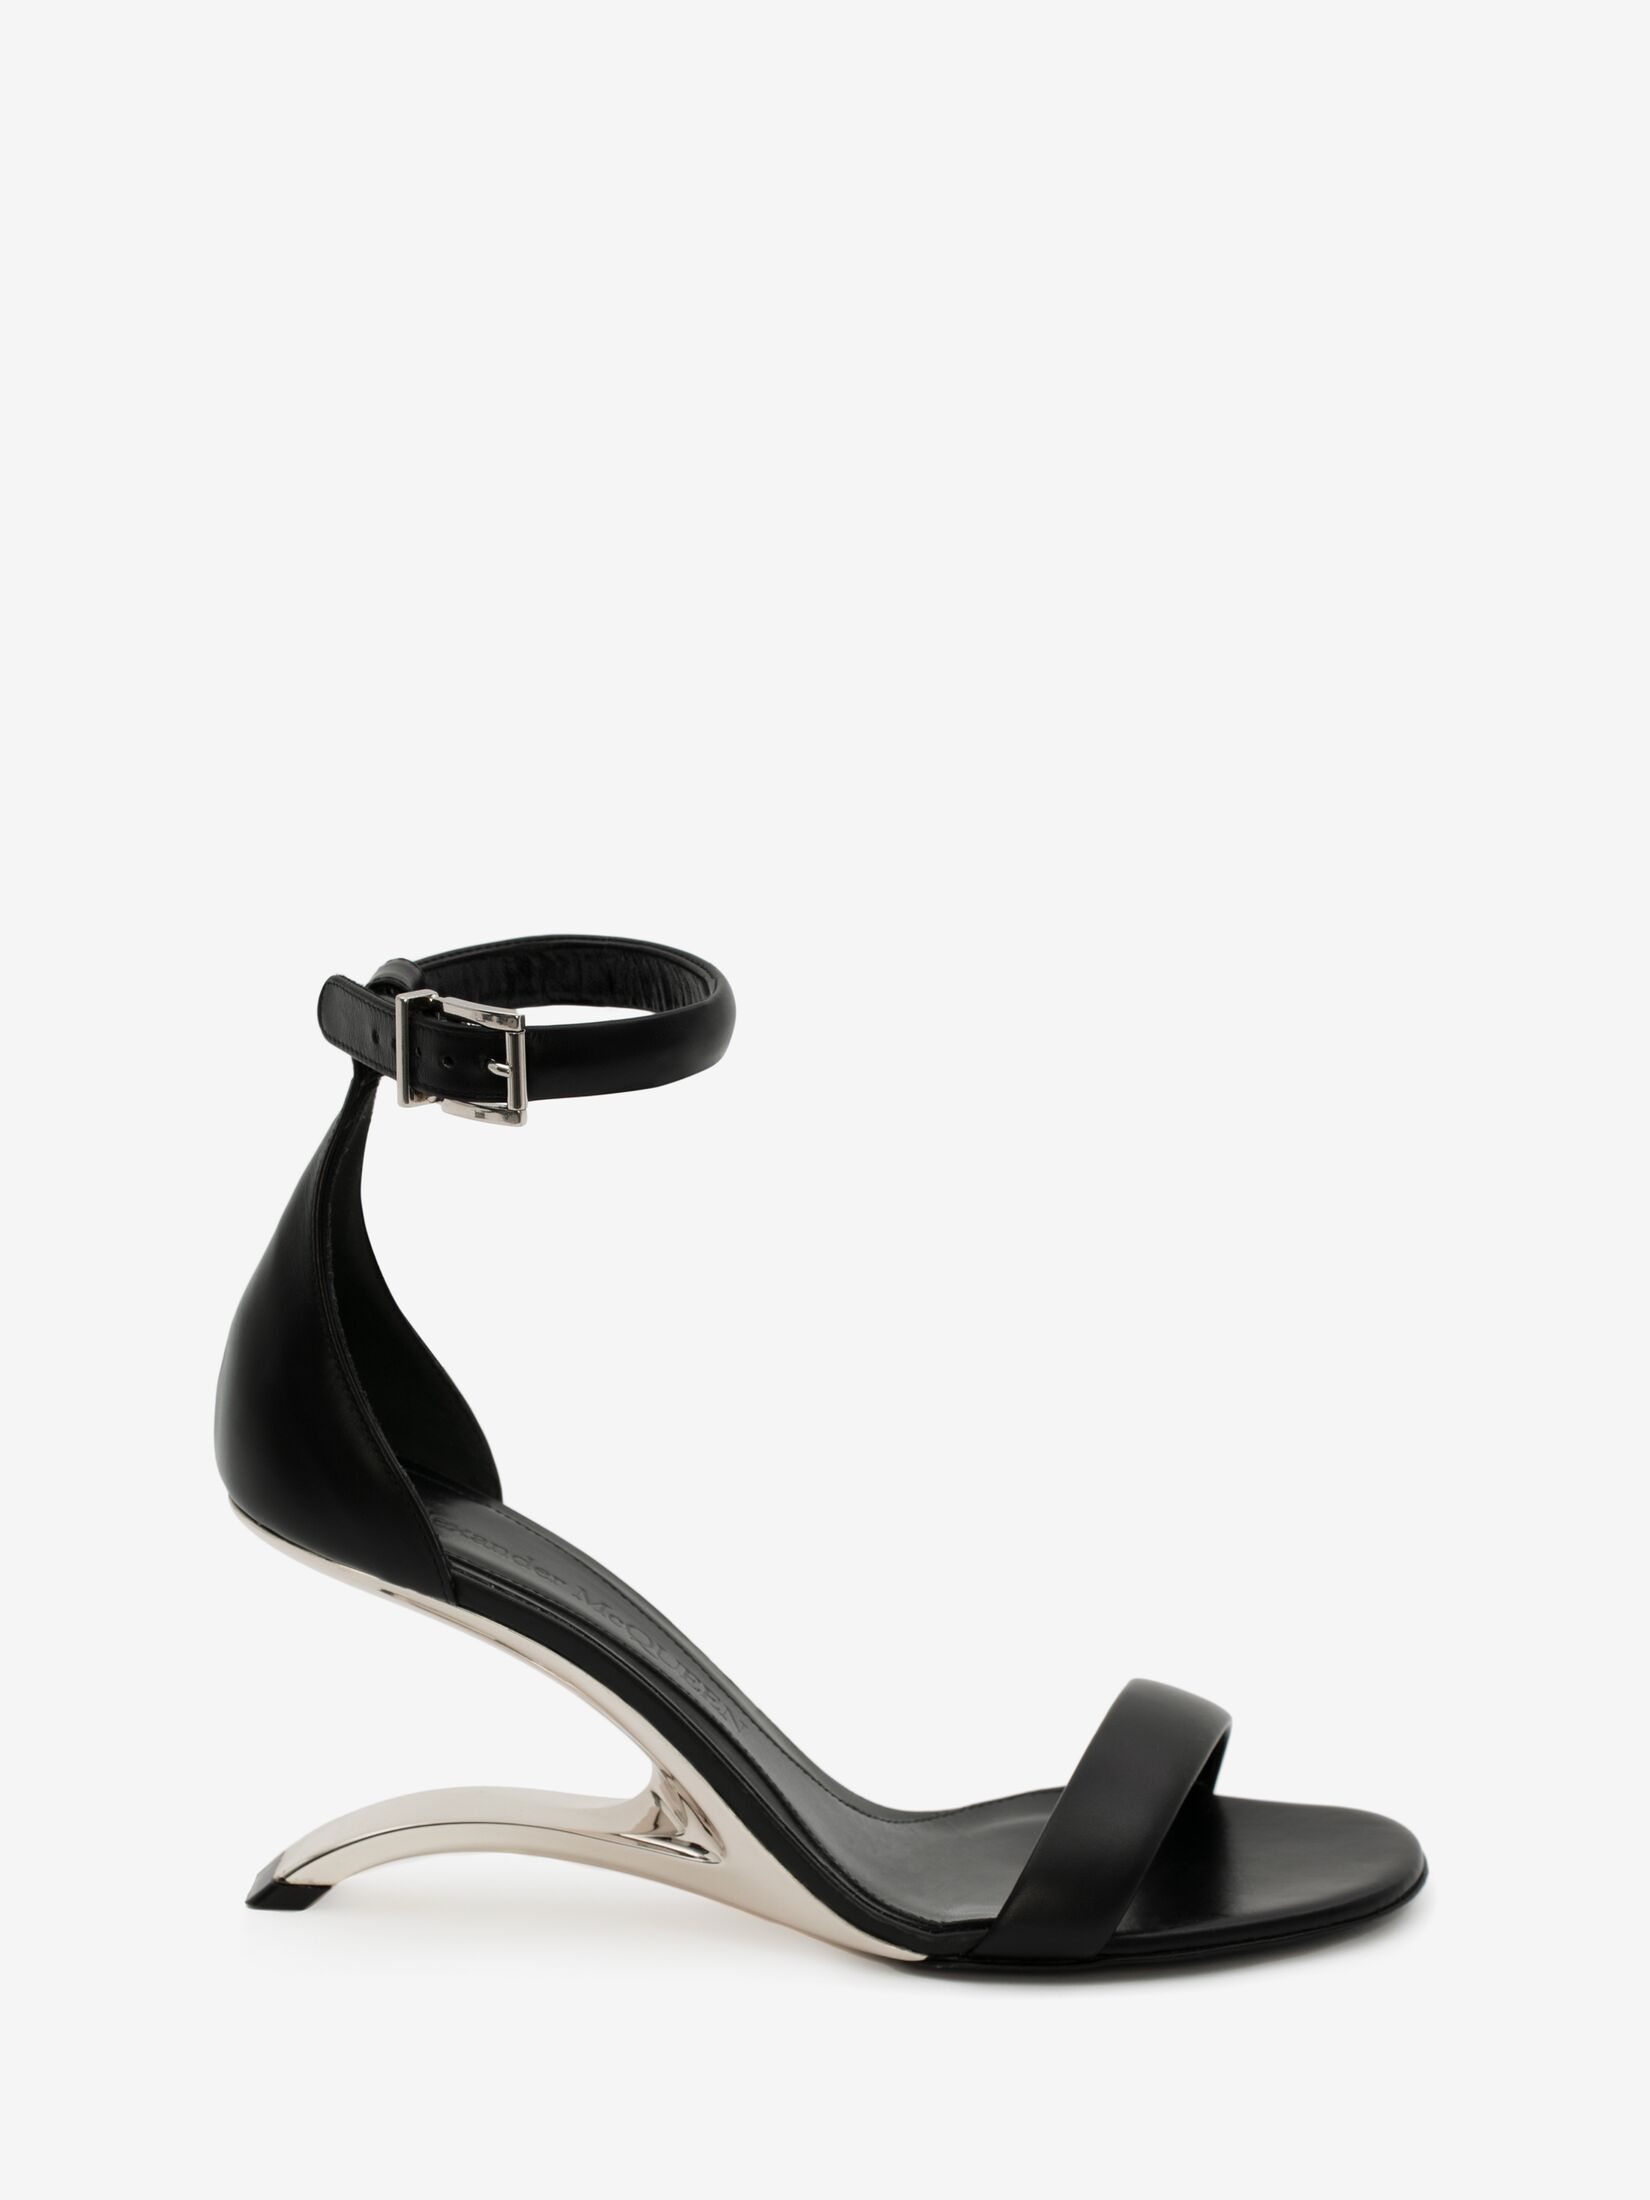 Alexander McQueen Women's Arc Leather Sandal in Black/silver £ 790